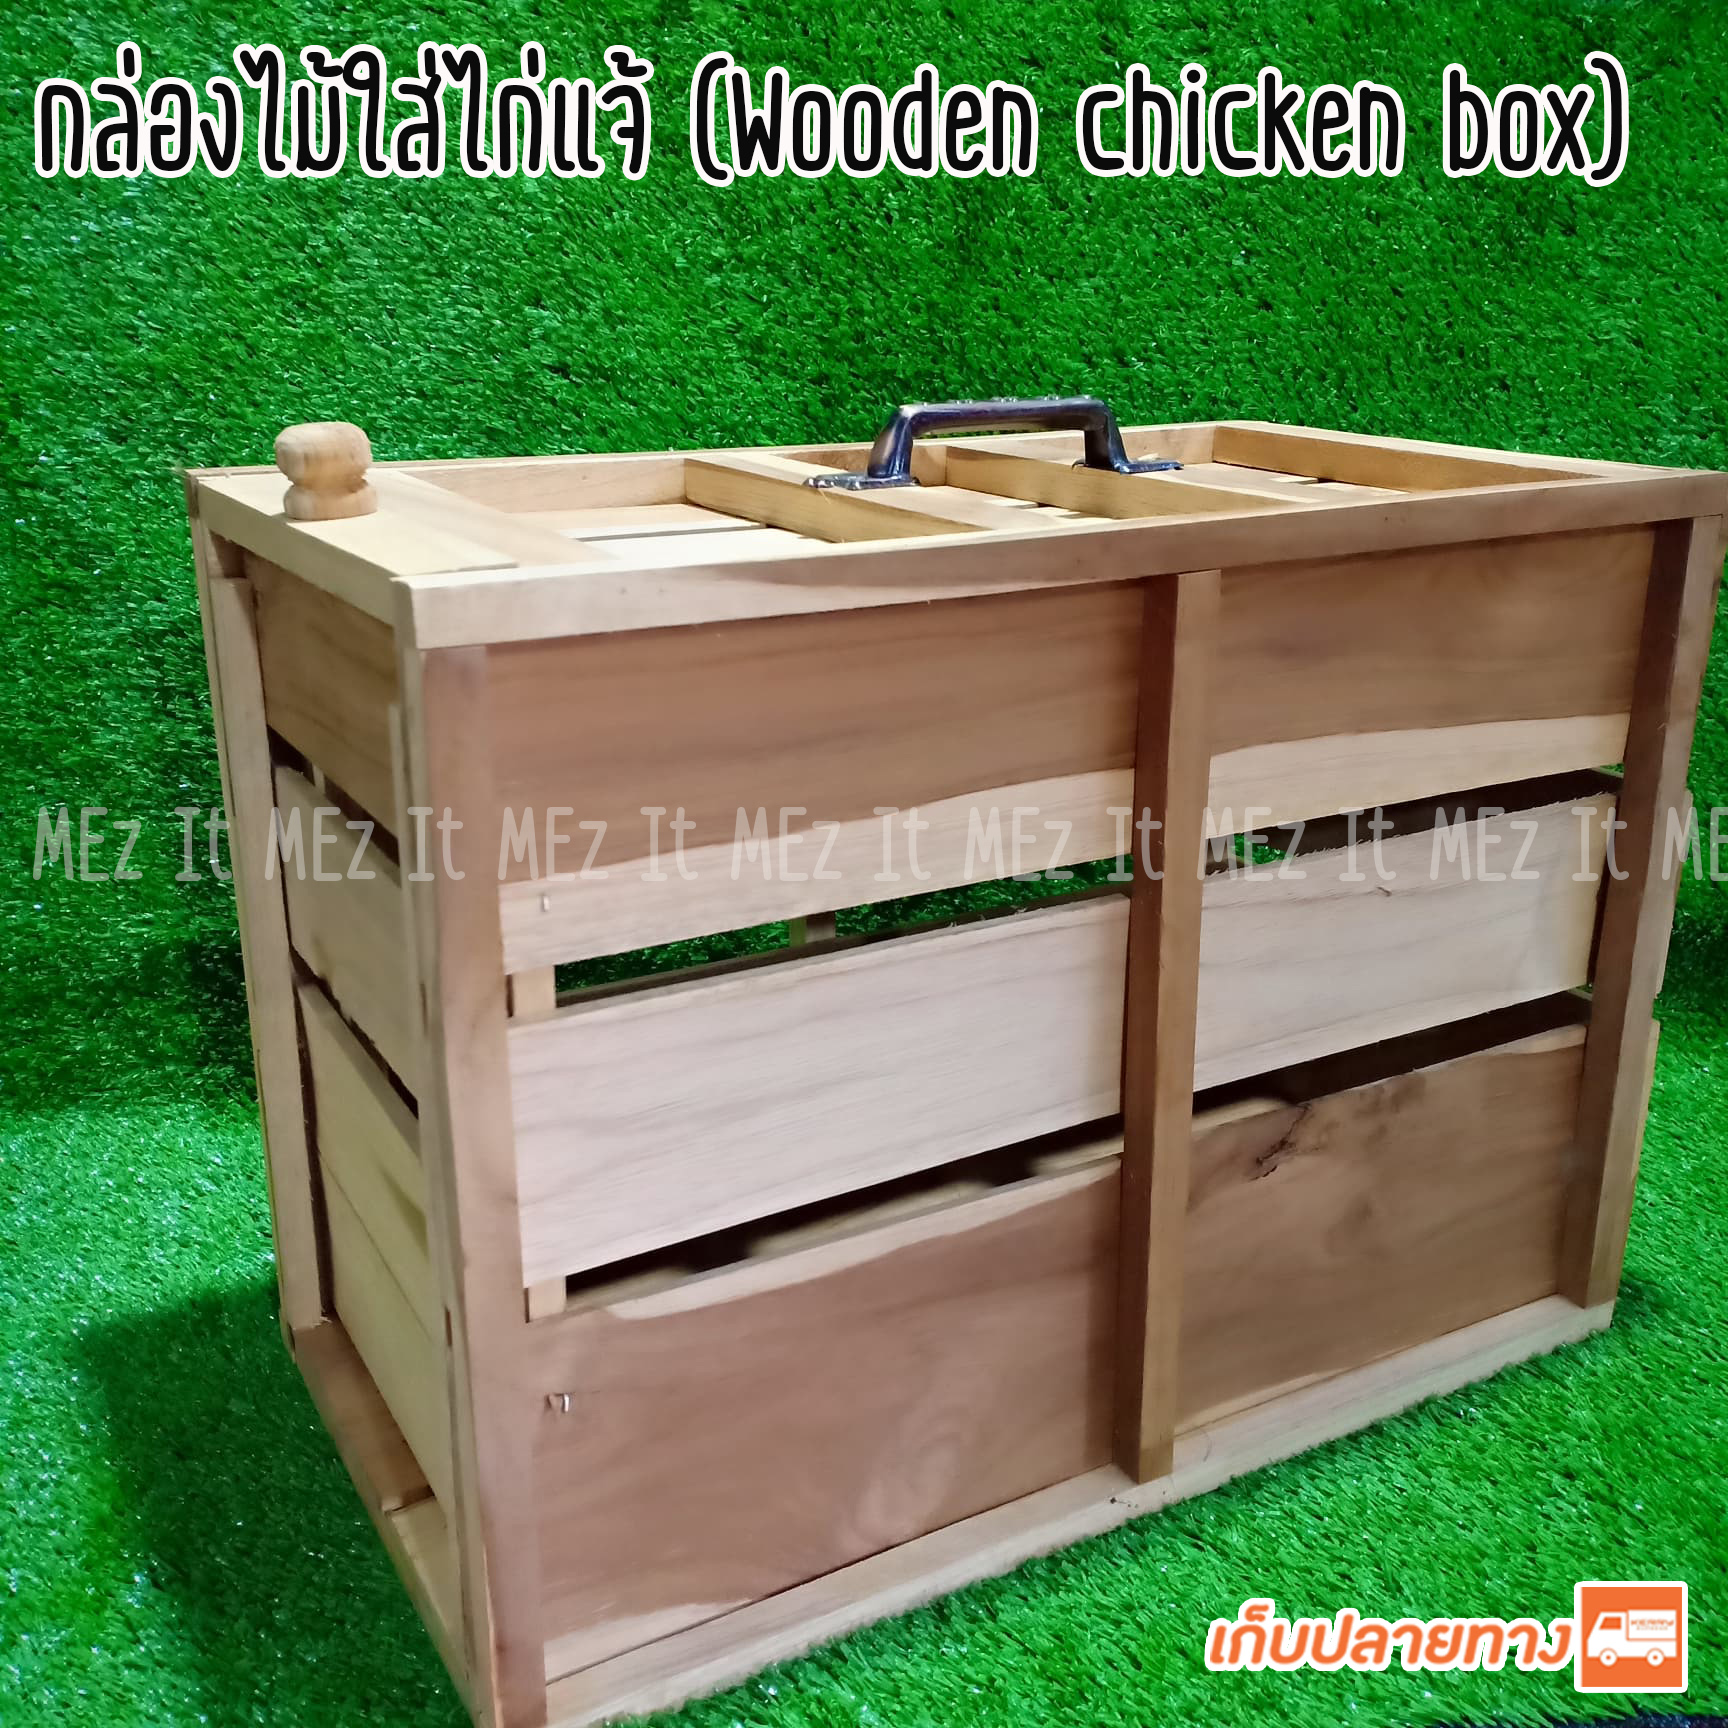 กล่องไม้ใส่ไก่แจ้ กล่องใส่ไก่แจ้ wooden chicken box